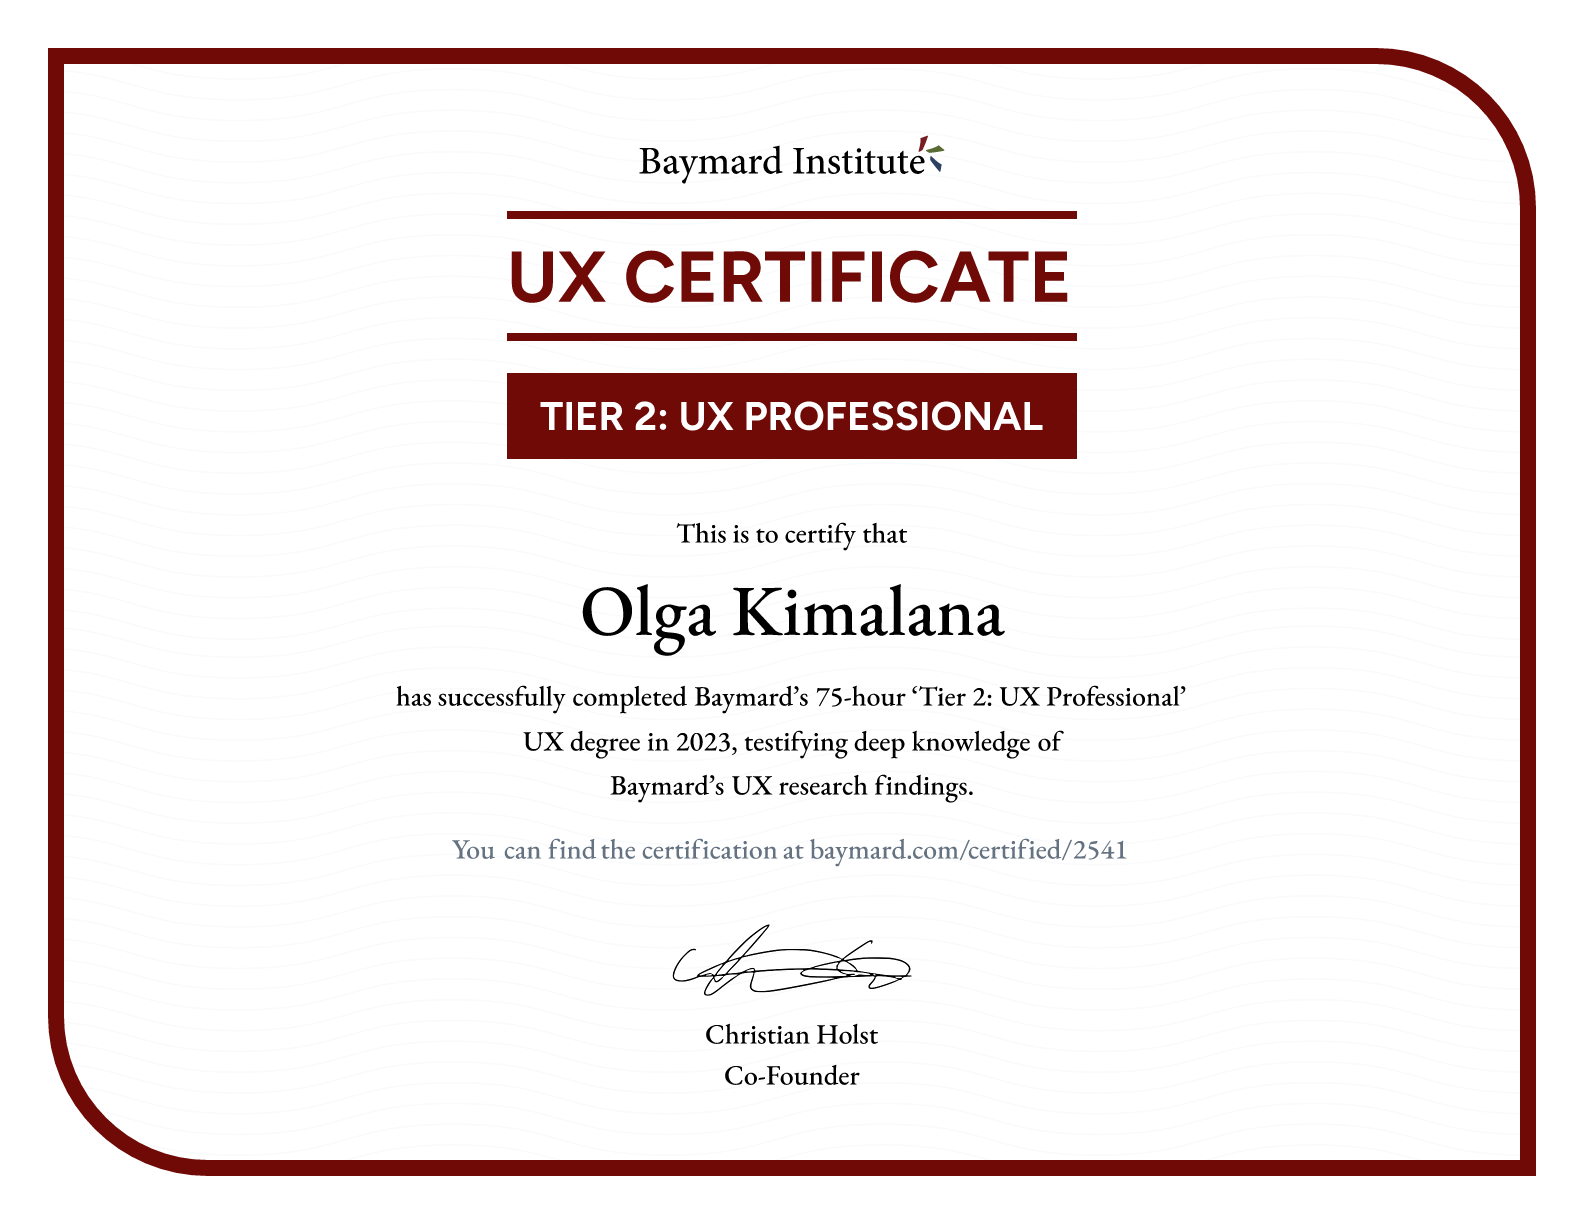 Olga Kimalana’s certificate